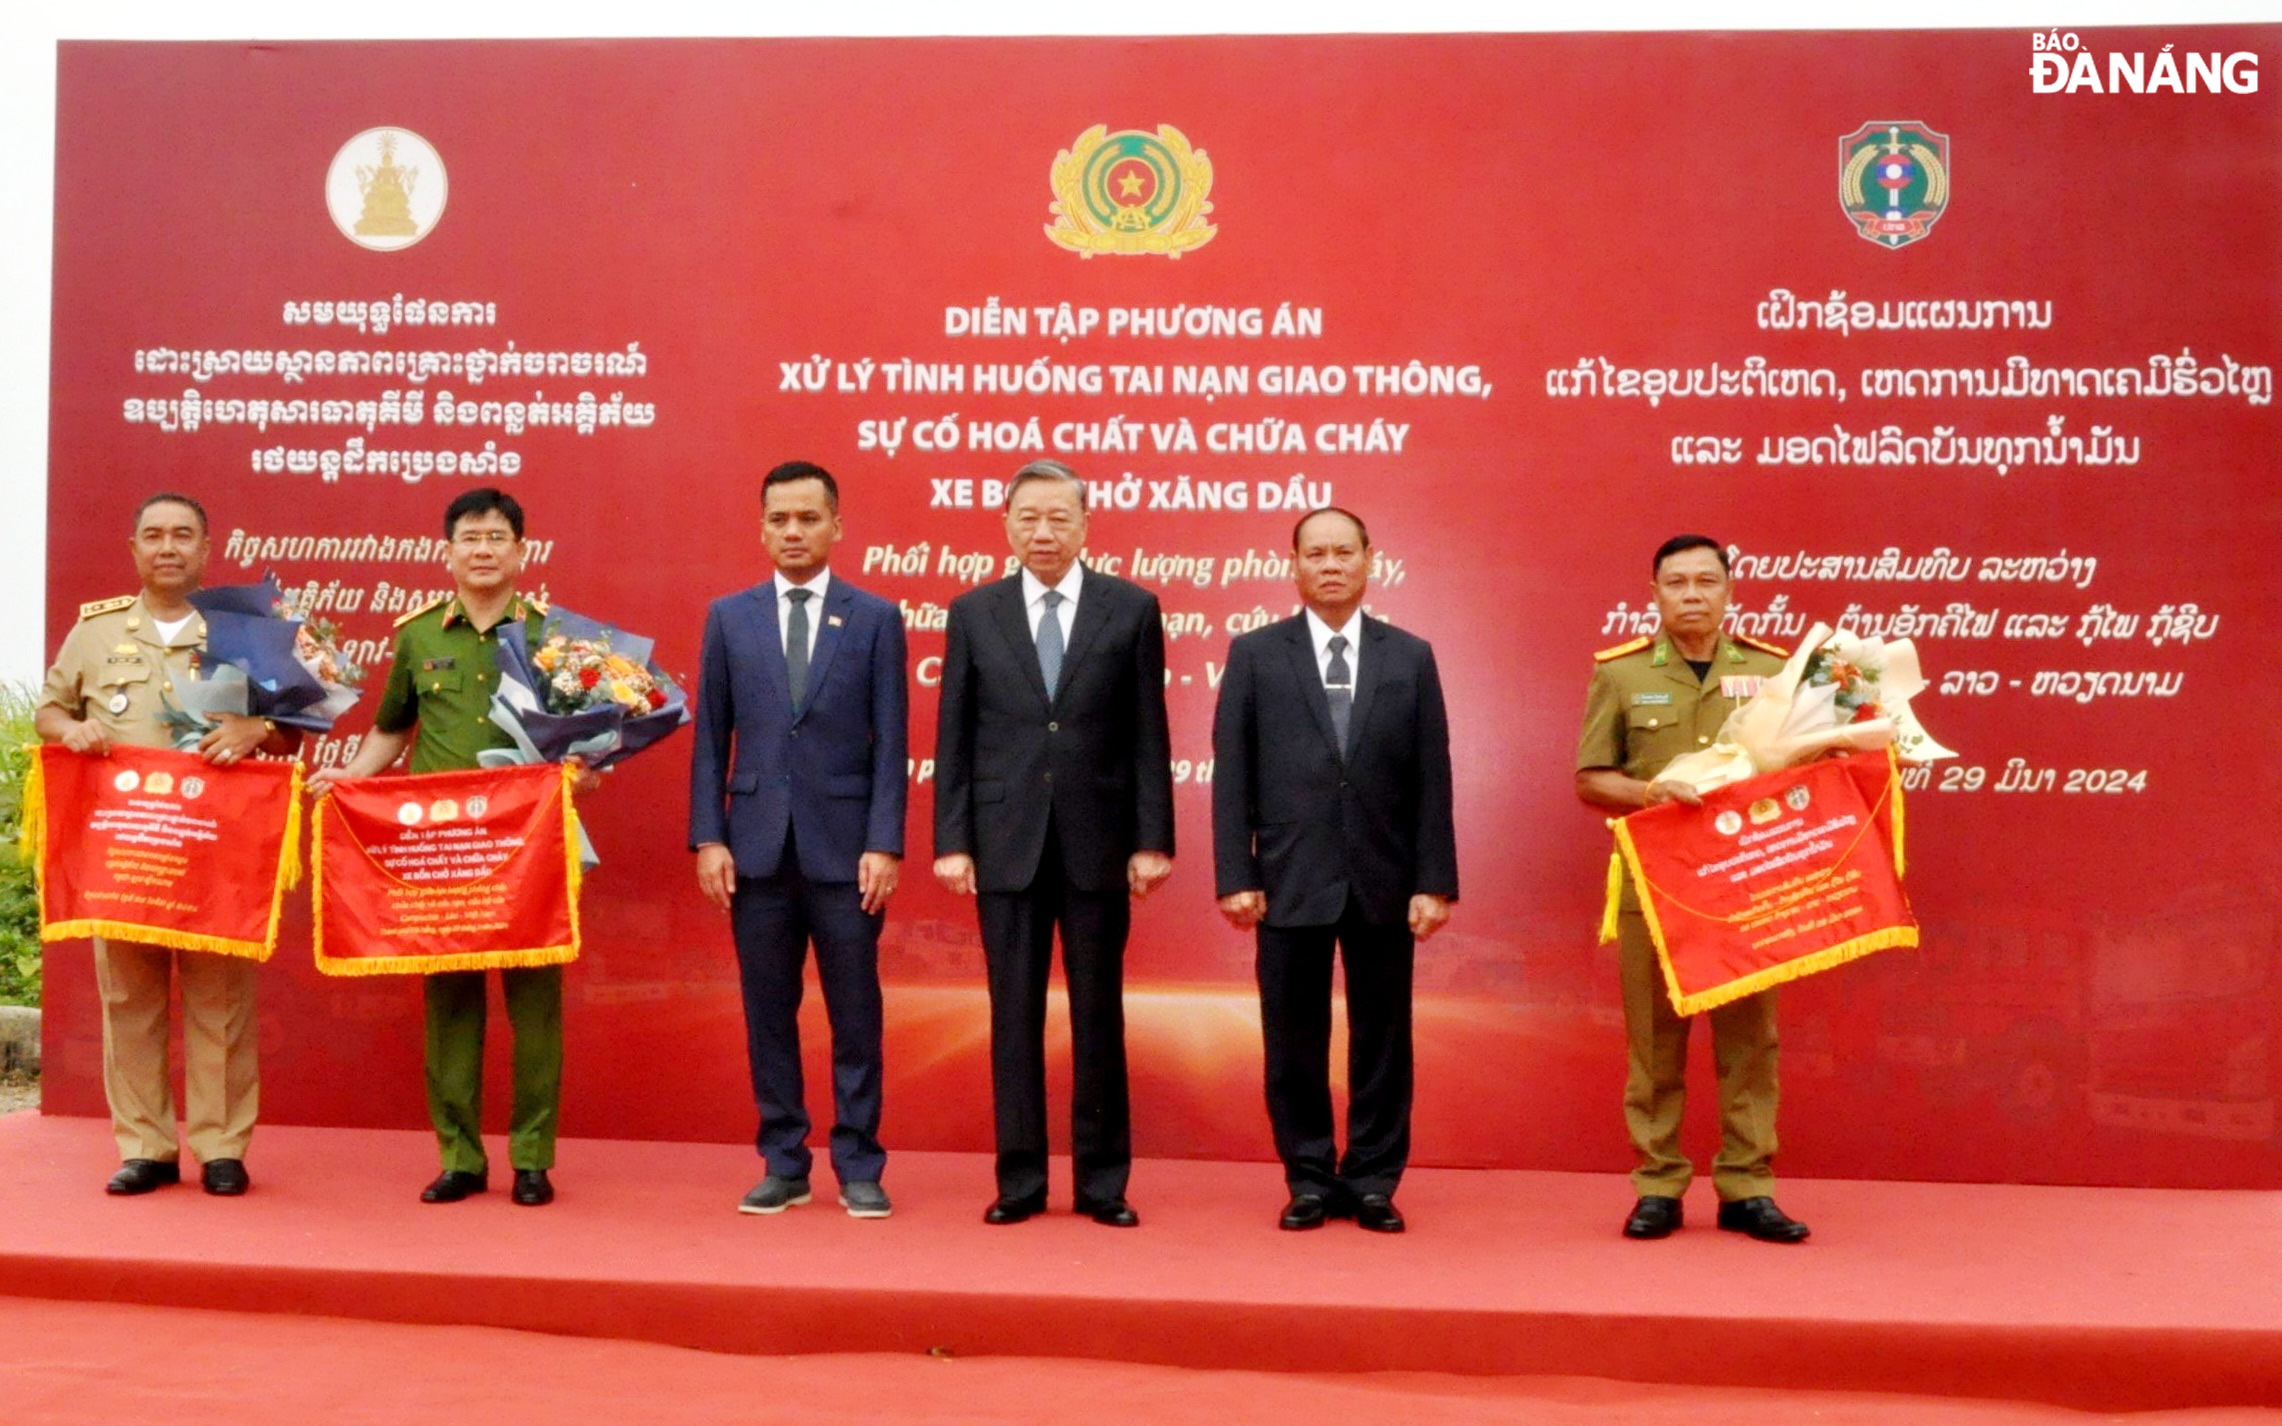 Bộ trưởng Công an, Nội vụ 3 nước Campuchia - Lào - Việt Nam tặng cờ và hoa cho lực lượng cảnh sát PCCC và CHCH 3 nước tham gia diễn tập. Ảnh: LÊ HÙNG